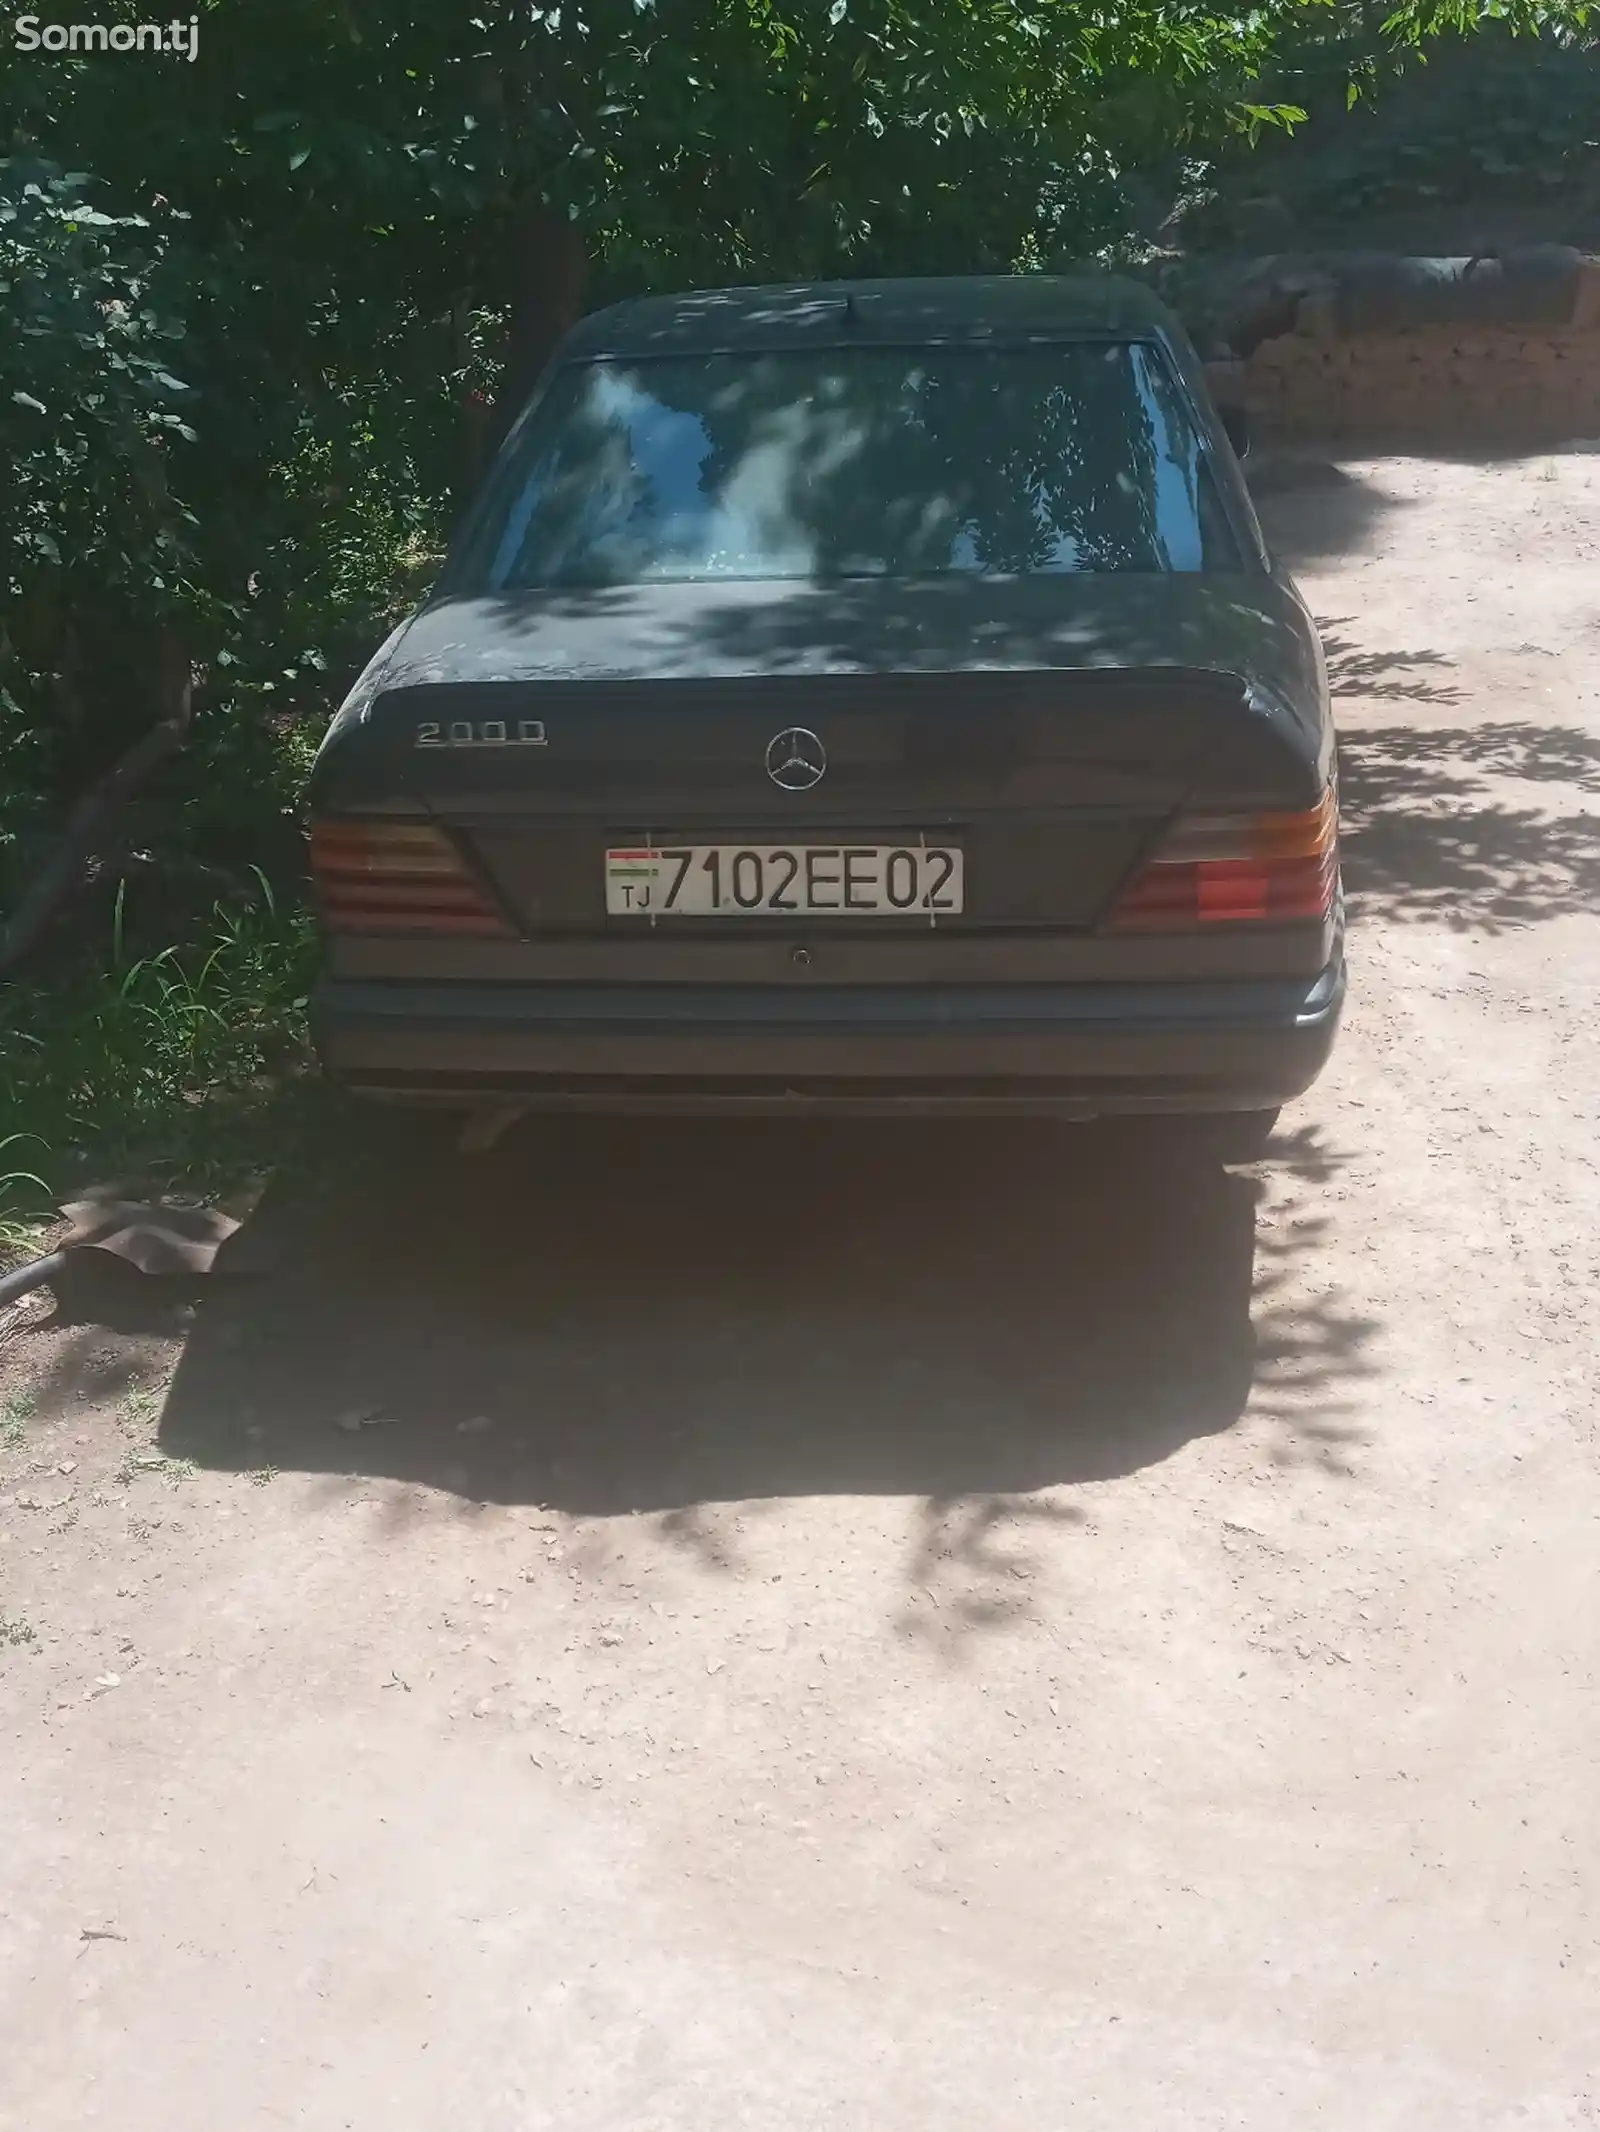 Mercedes-Benz W124, 1988-3